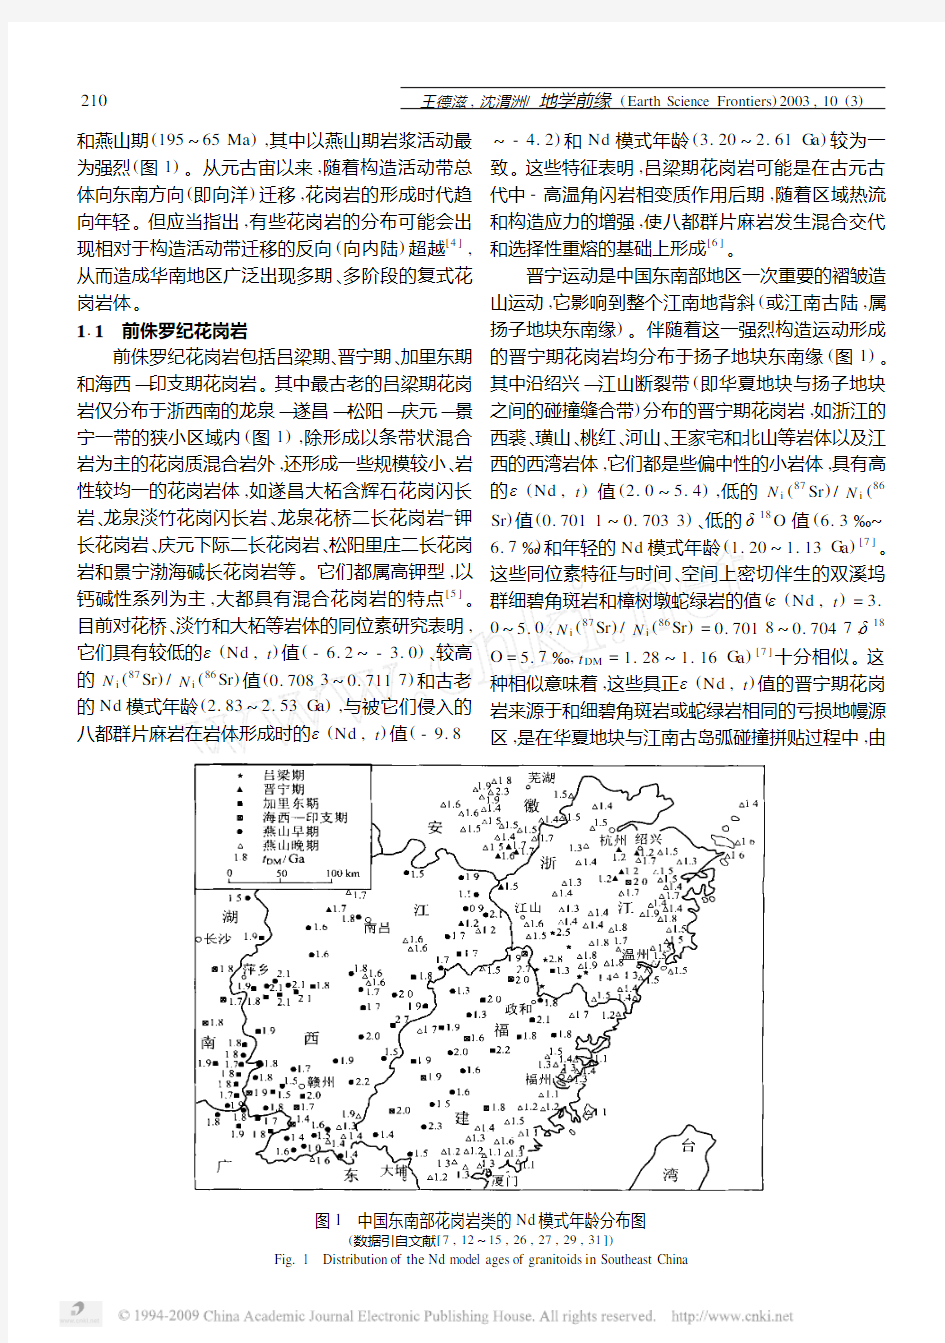 中国东南部花岗岩成因与地壳演化